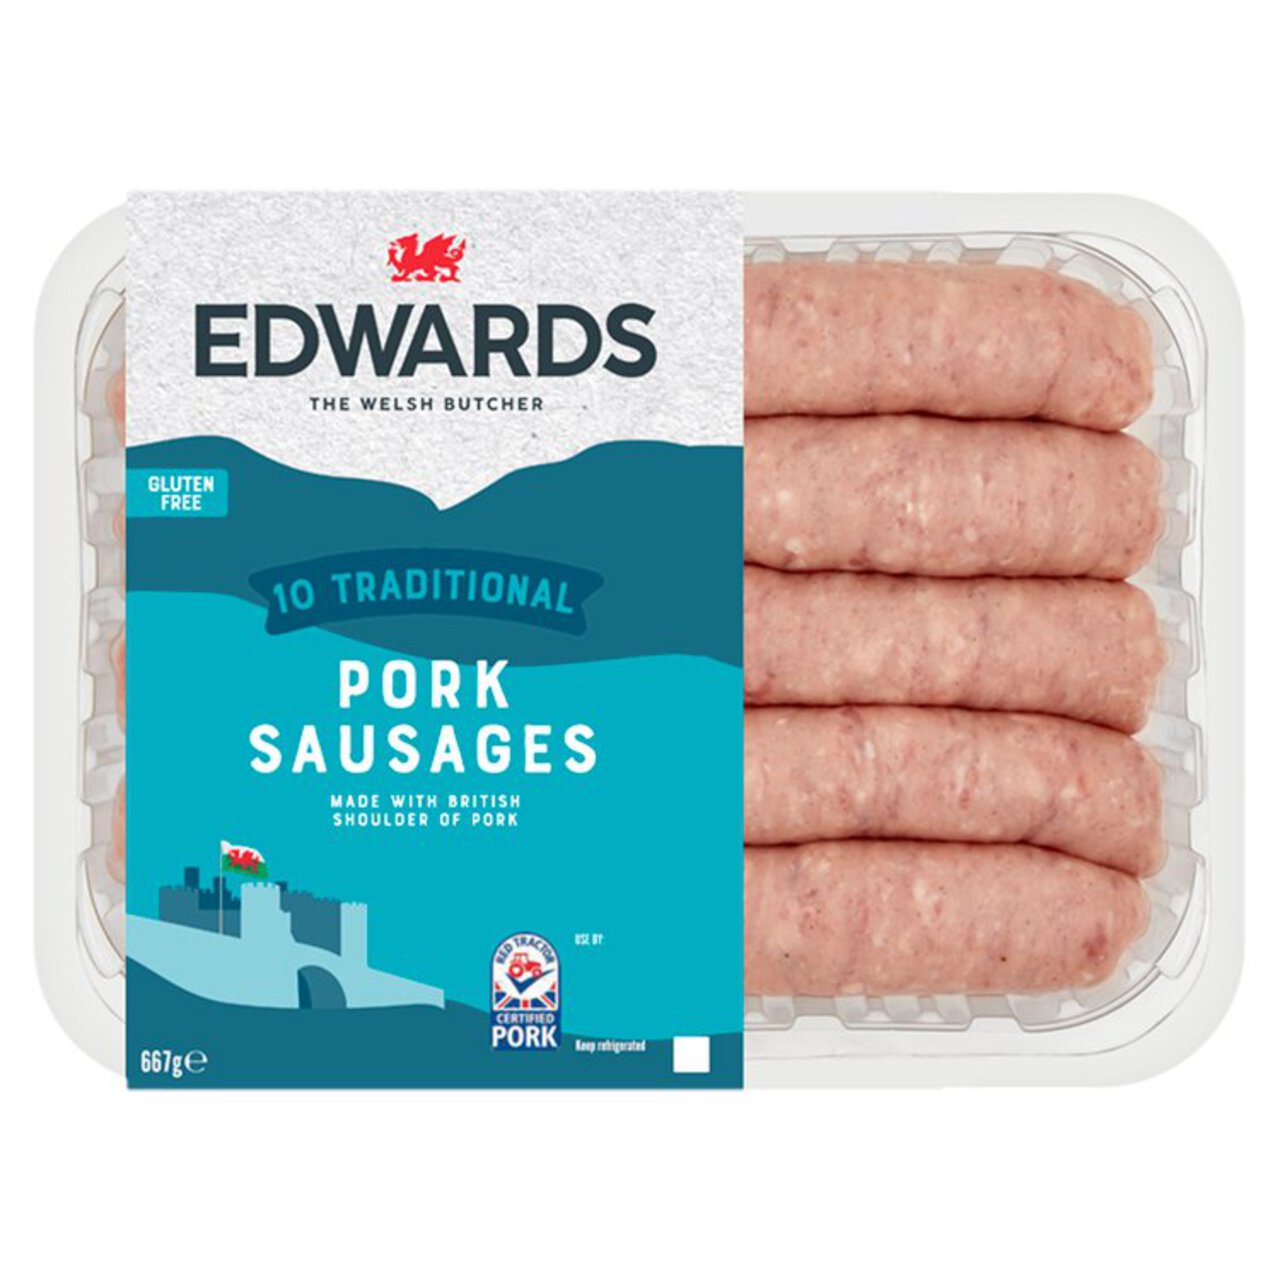 Edwards Traditional Pork Sausages 667g